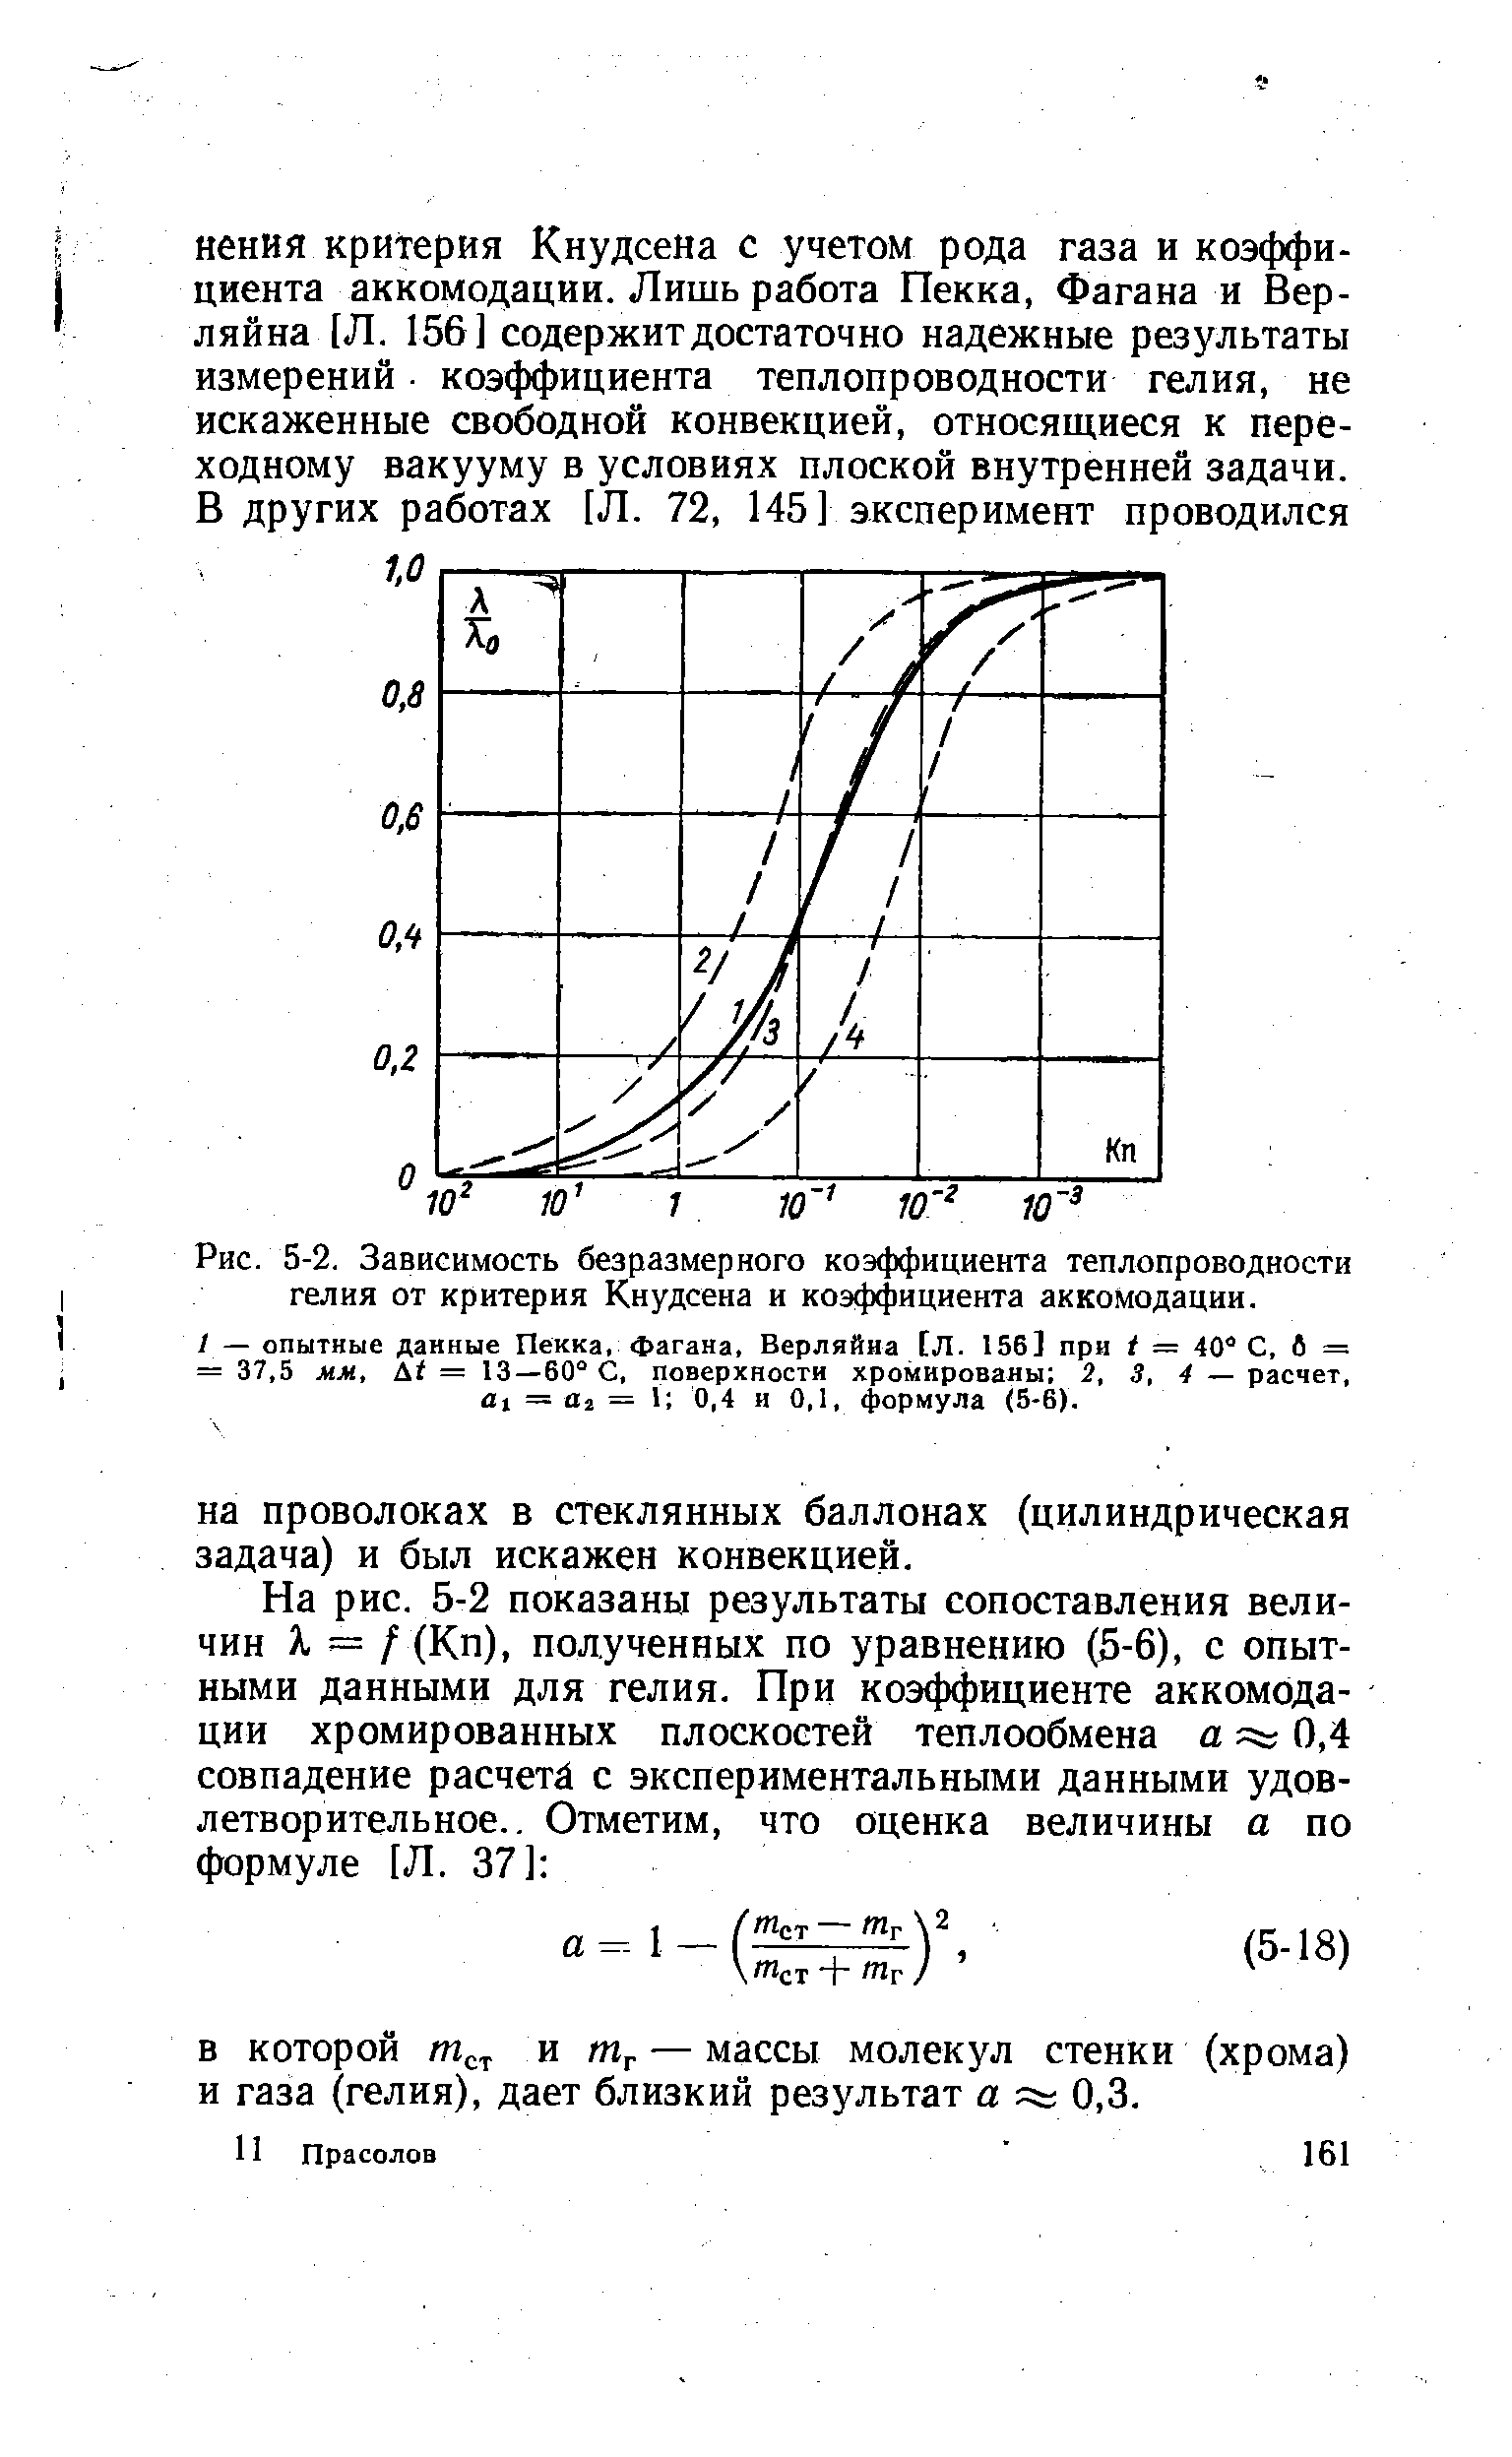 Рис. 5-2. Зависимость безразмерного коэффициента теплопроводности гелия от критерия Кнудсена и коэффициента аккомодации.
